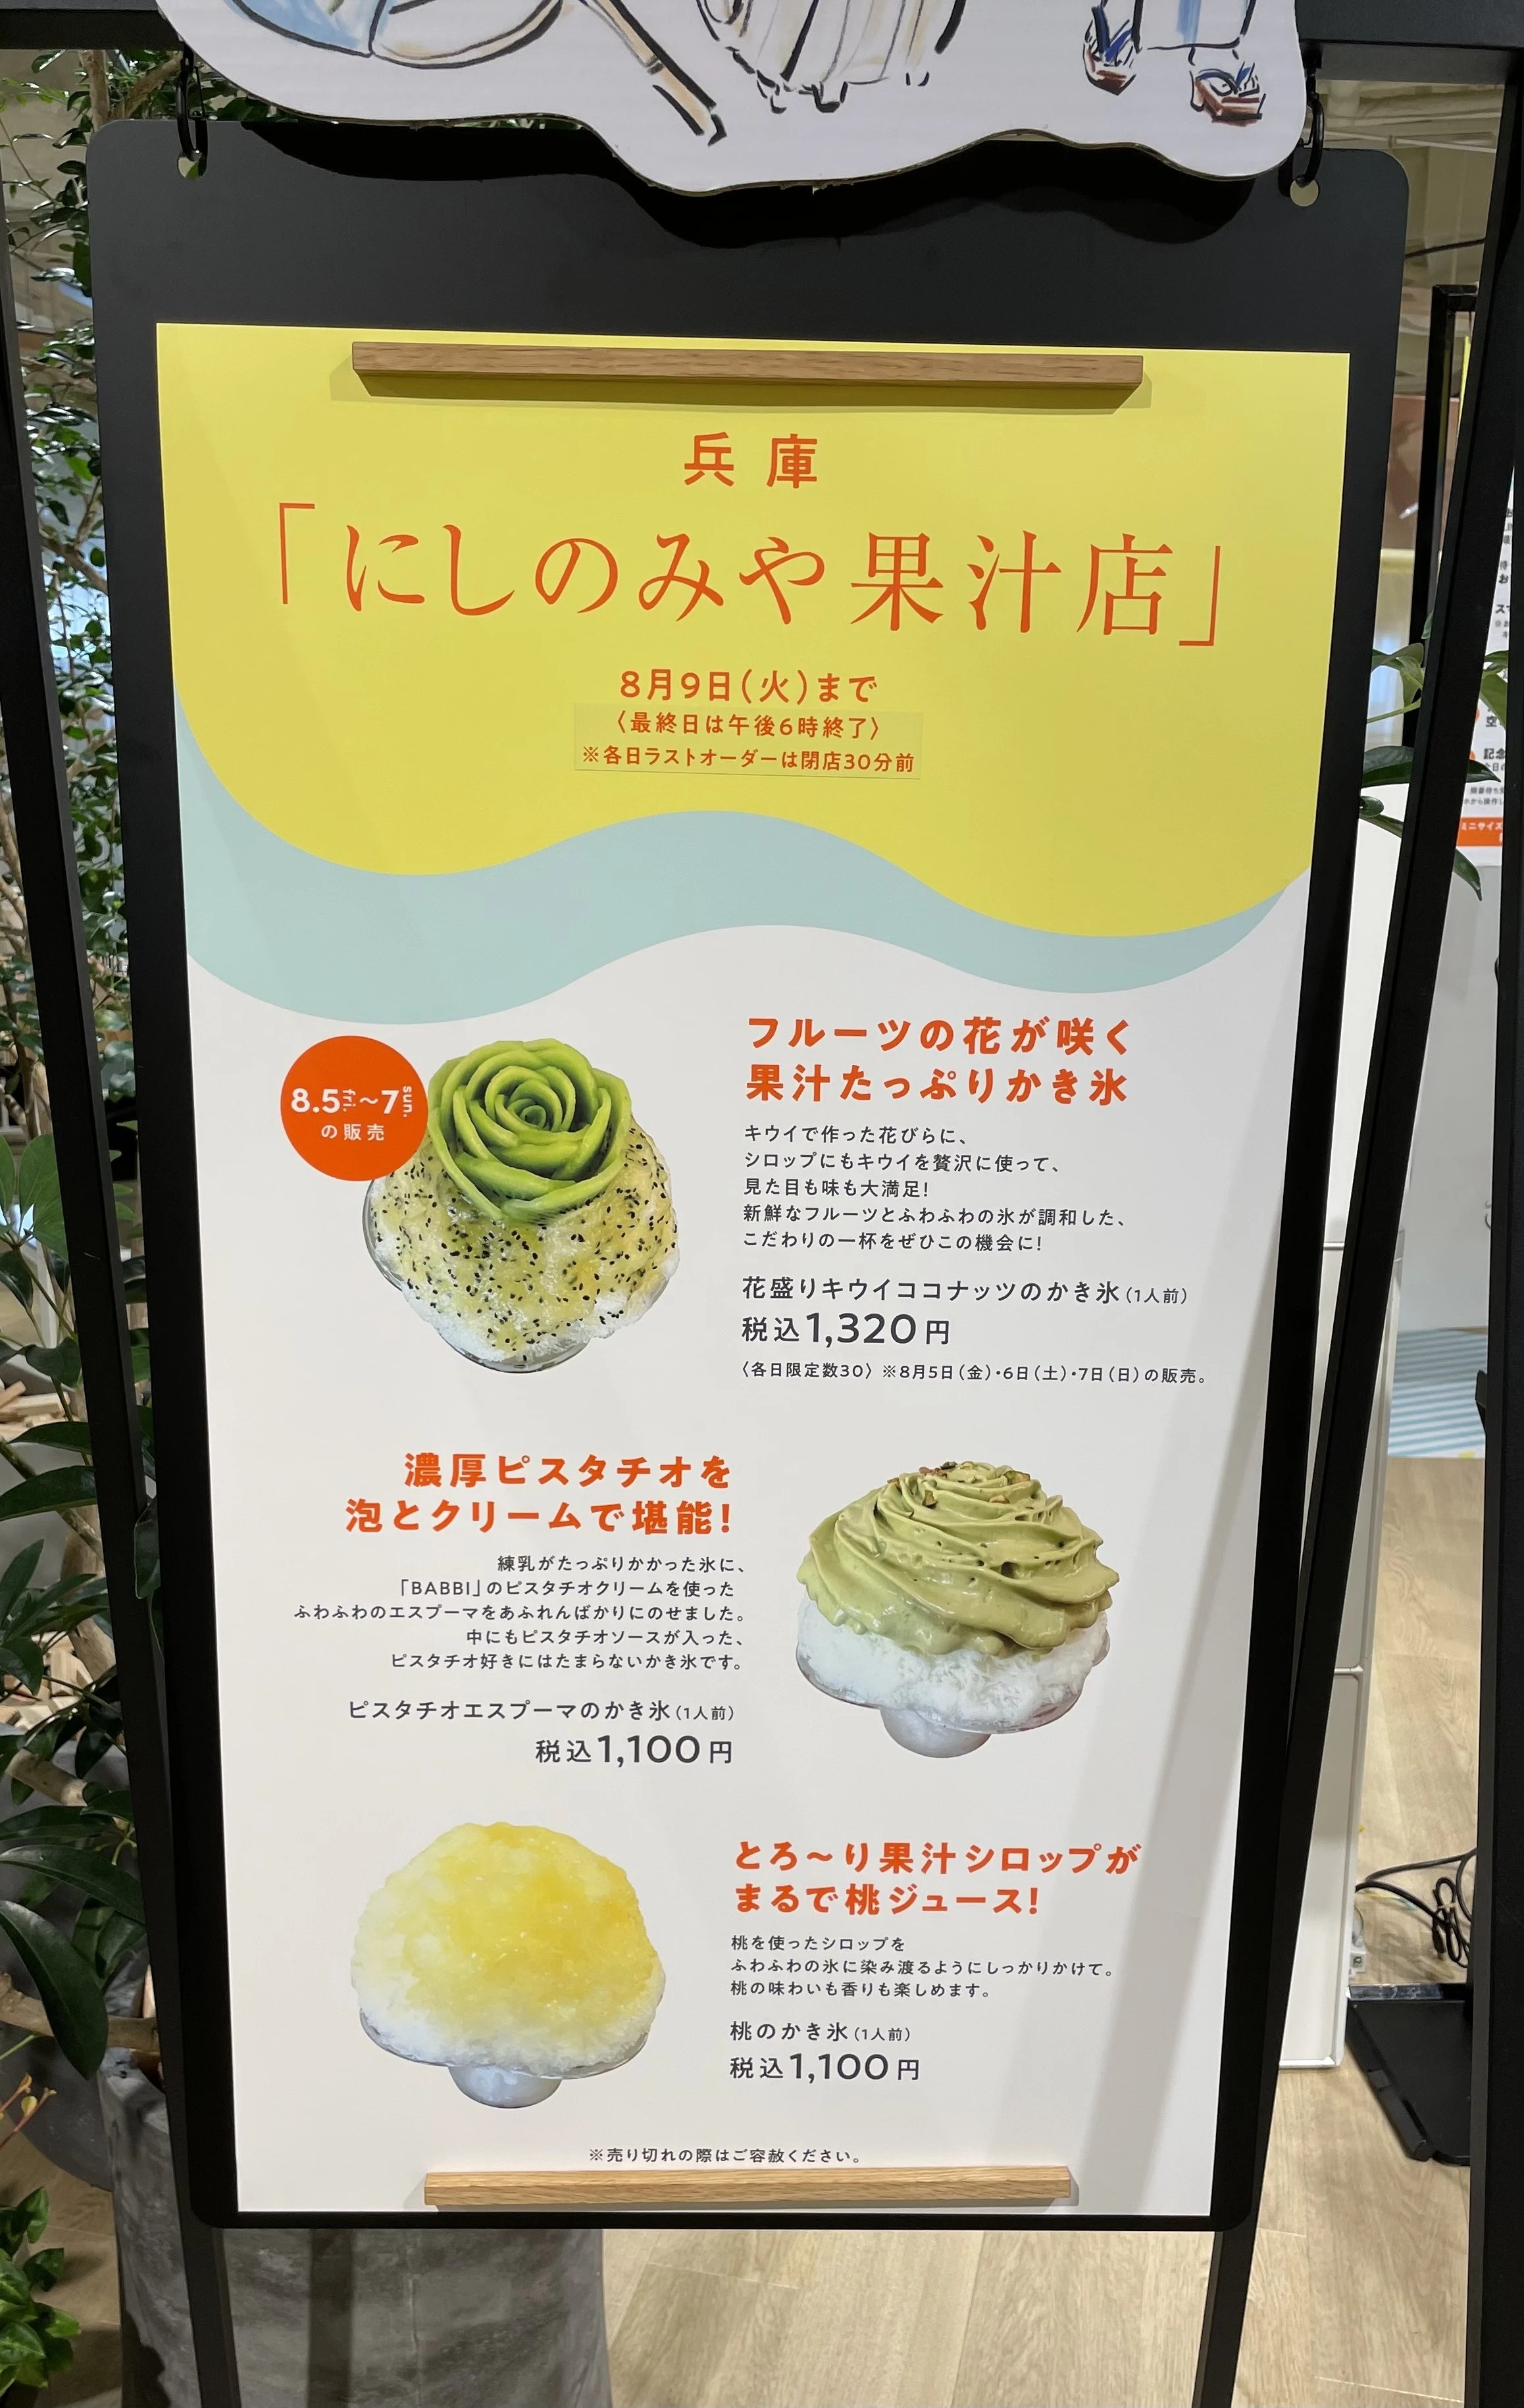 「にしのみや果汁店」のメニュー表